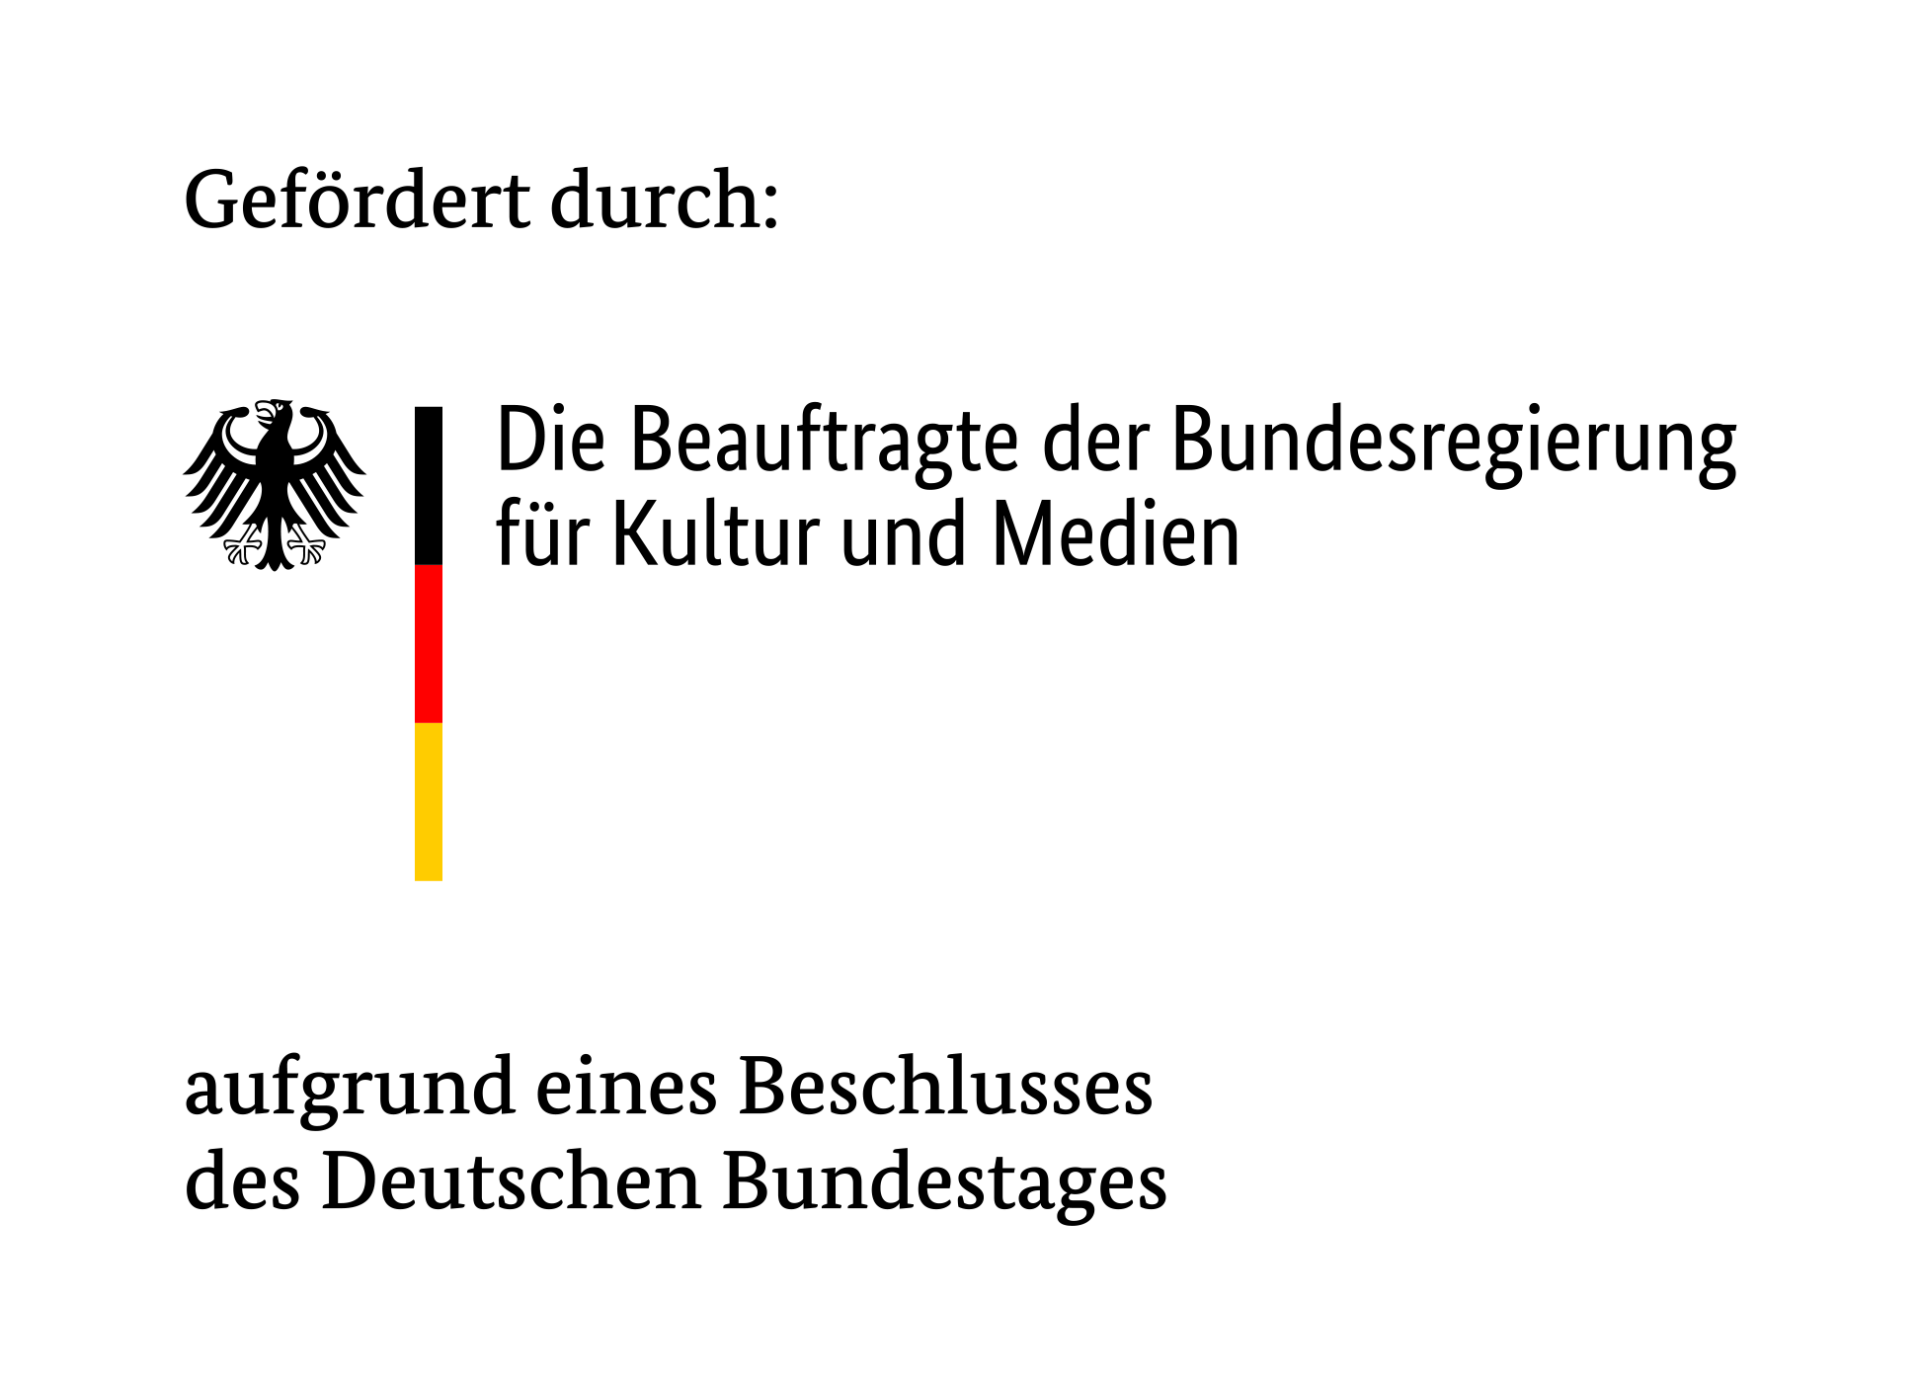 Dieser Hinweis zeigt, dass das Projekt durch die Beauftragte der Bundesregierung für Kultur und Medien, aufgrund eines Beschlusses des Deutschen Bundestages, gefördert wird.